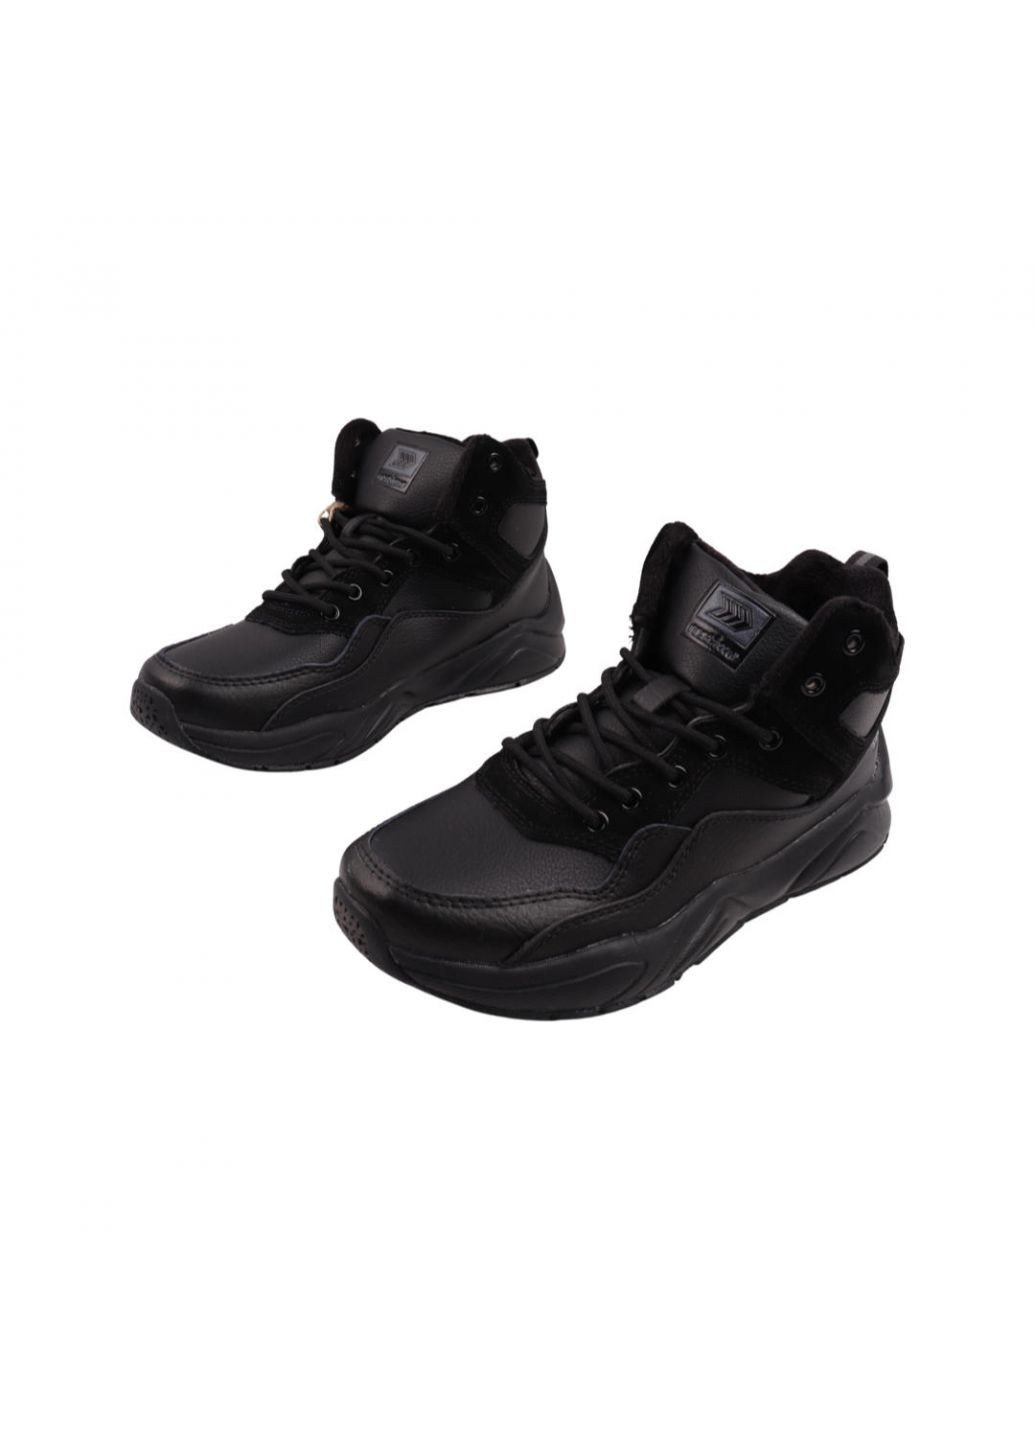 Черные ботинки мужские черные натуральная кожа Restime 221-22DHS